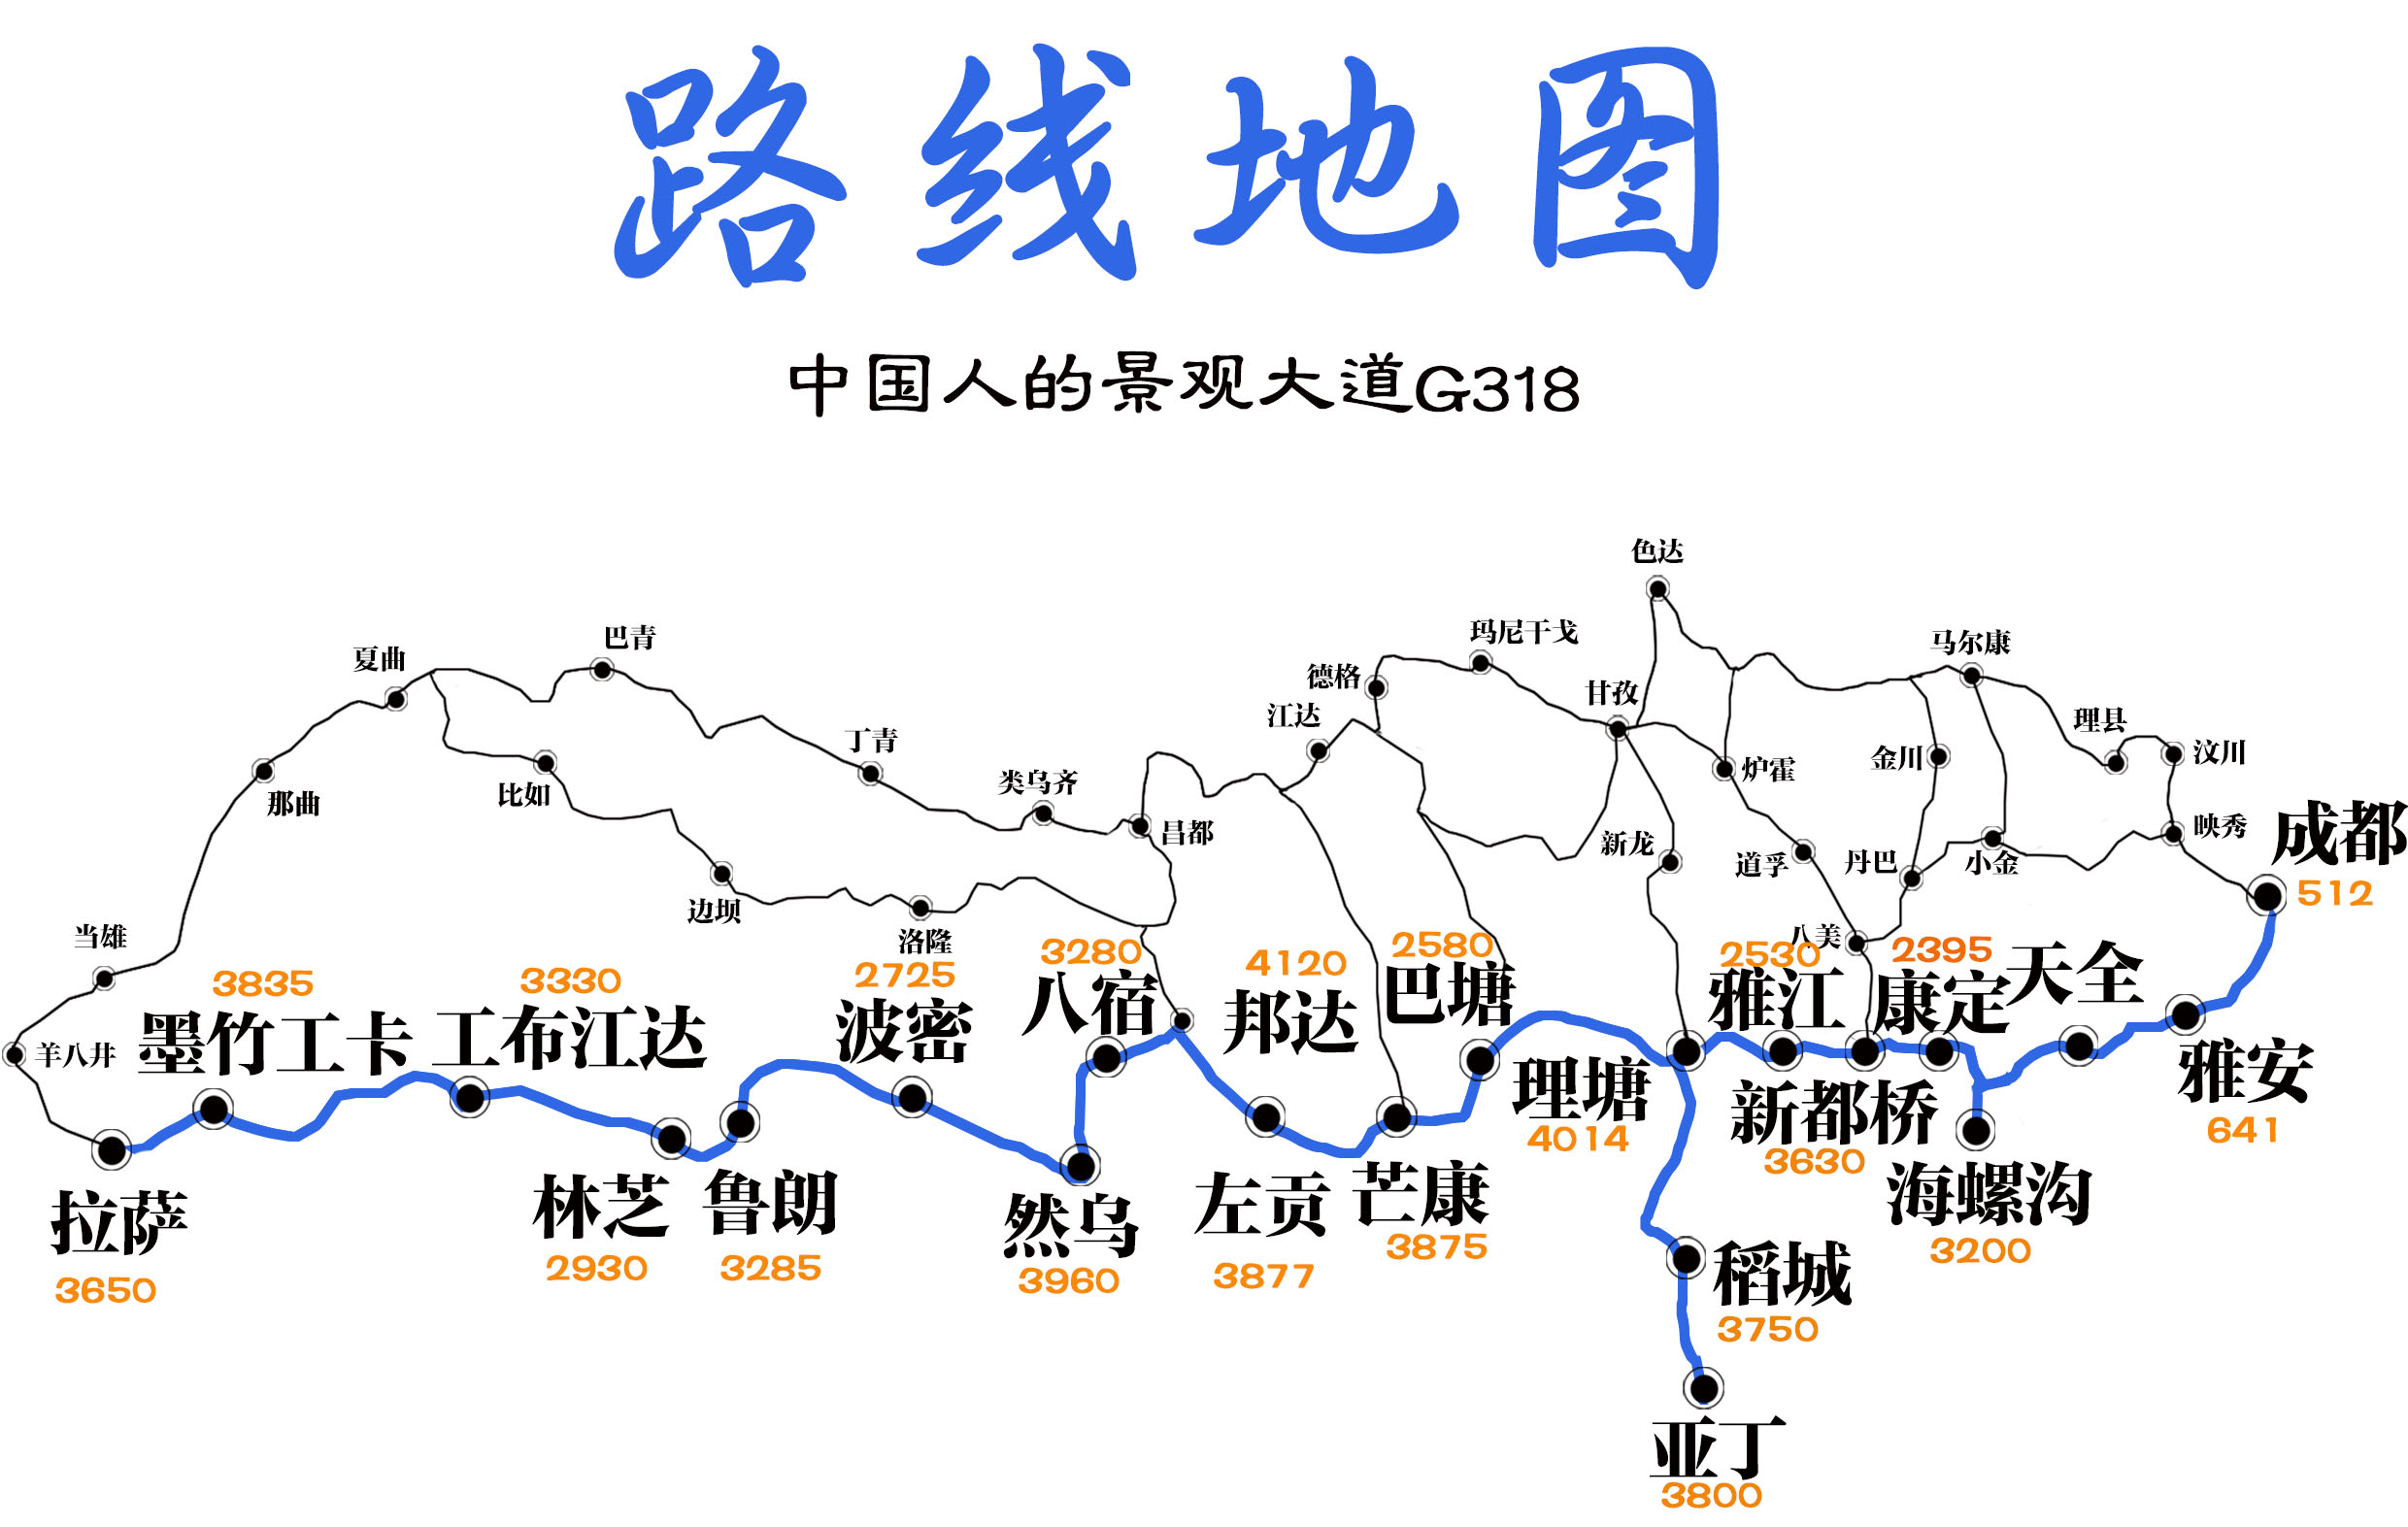 二郎山隧道地图图片